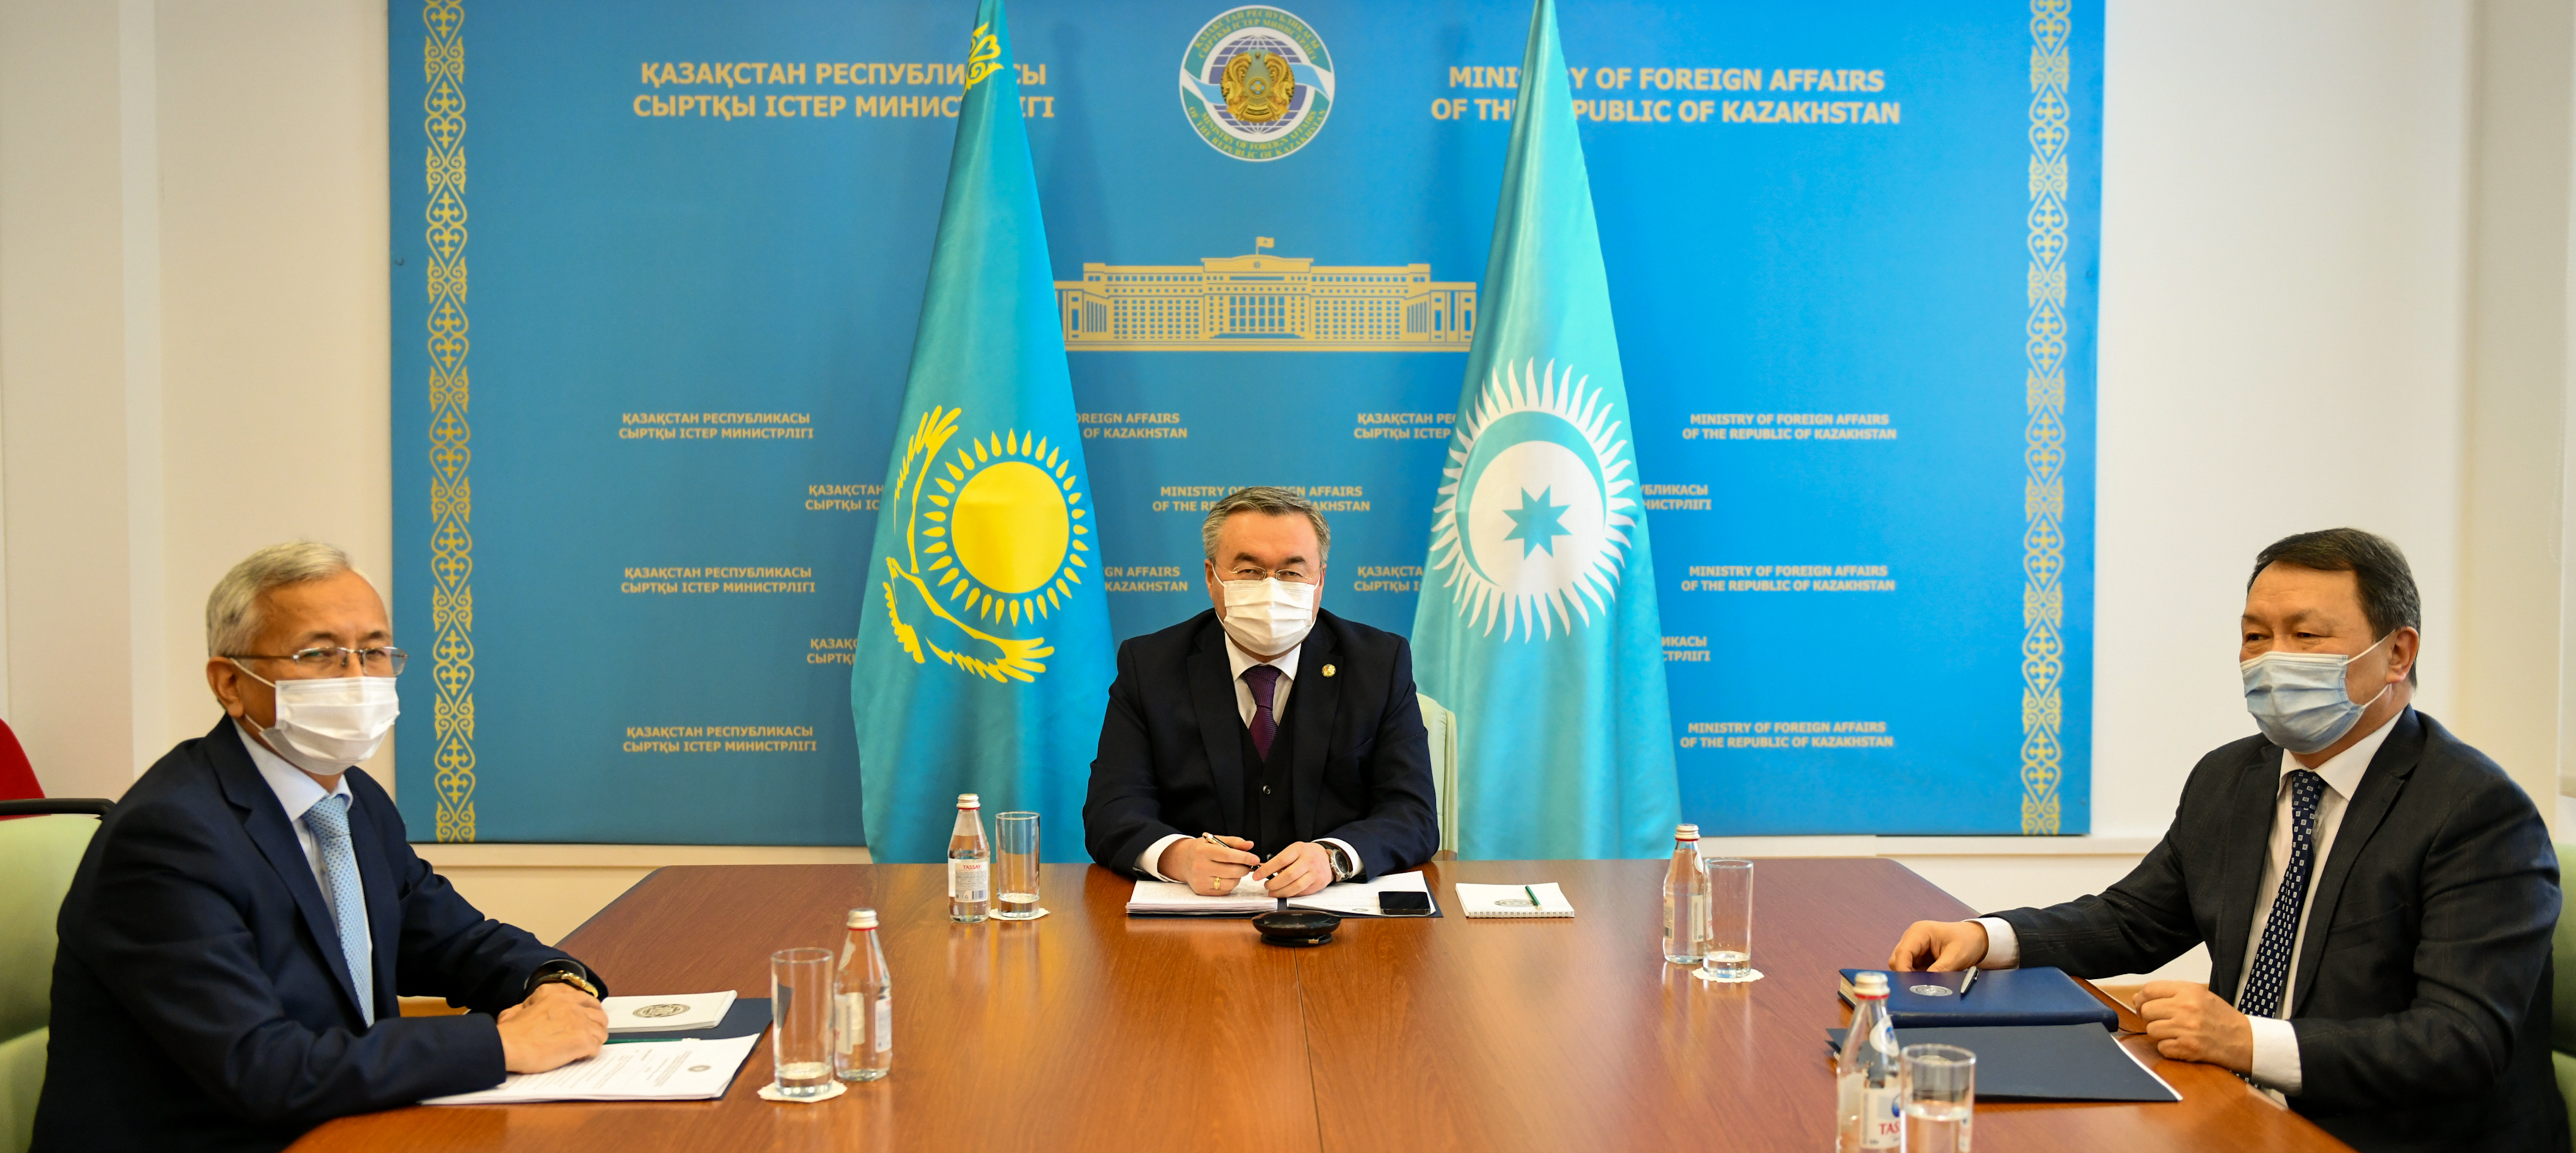 Состоялось чрезвычайное заседание Организации тюркских государств, посвященное ситуации в Казахстане